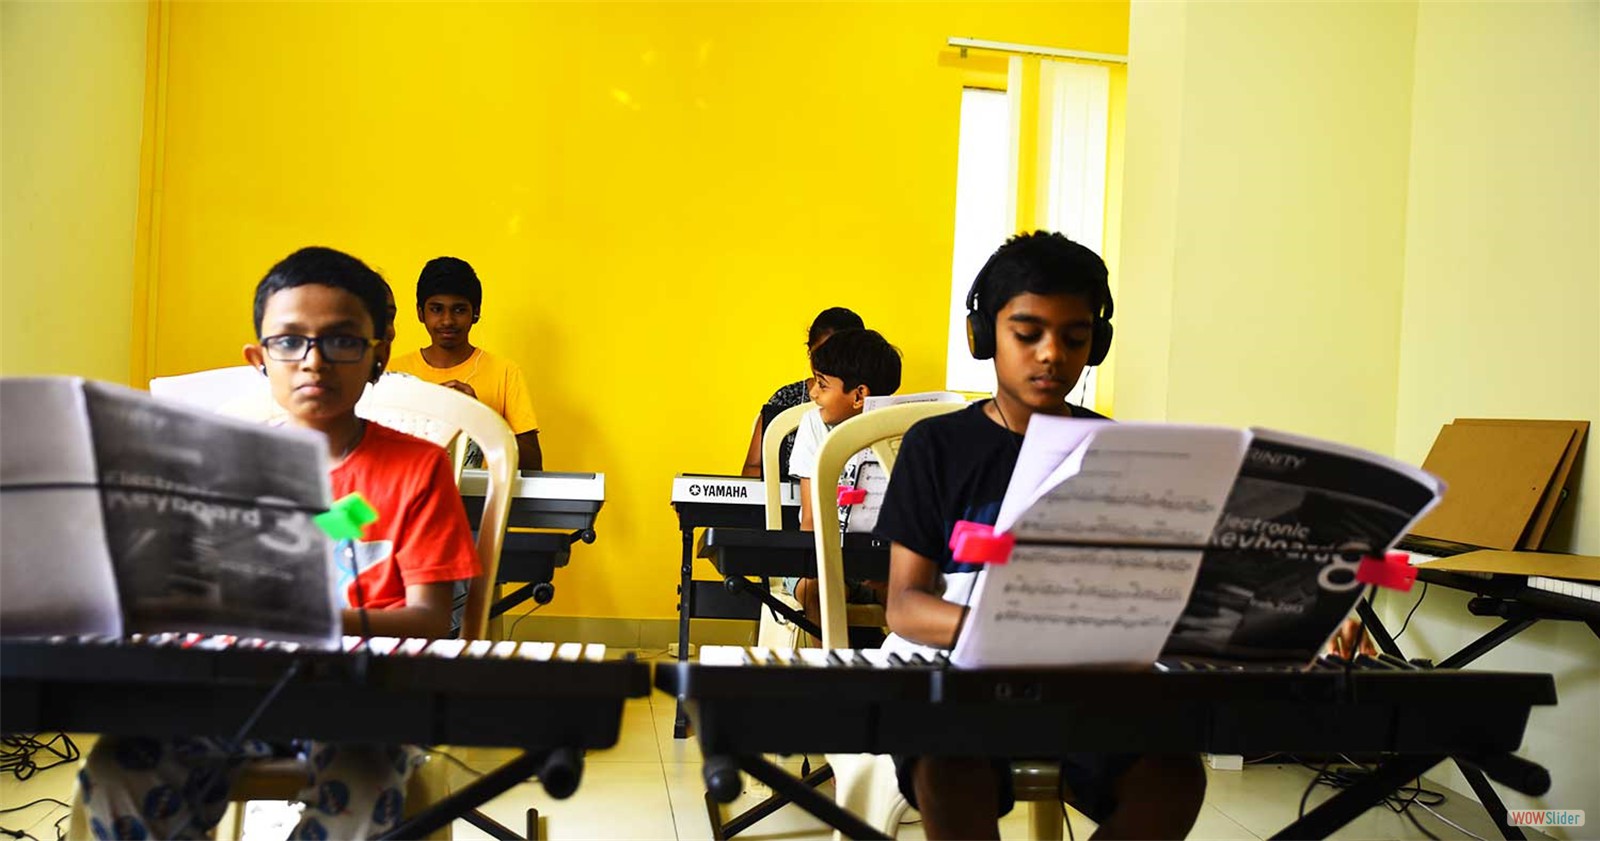 The Coimbatore School of Music